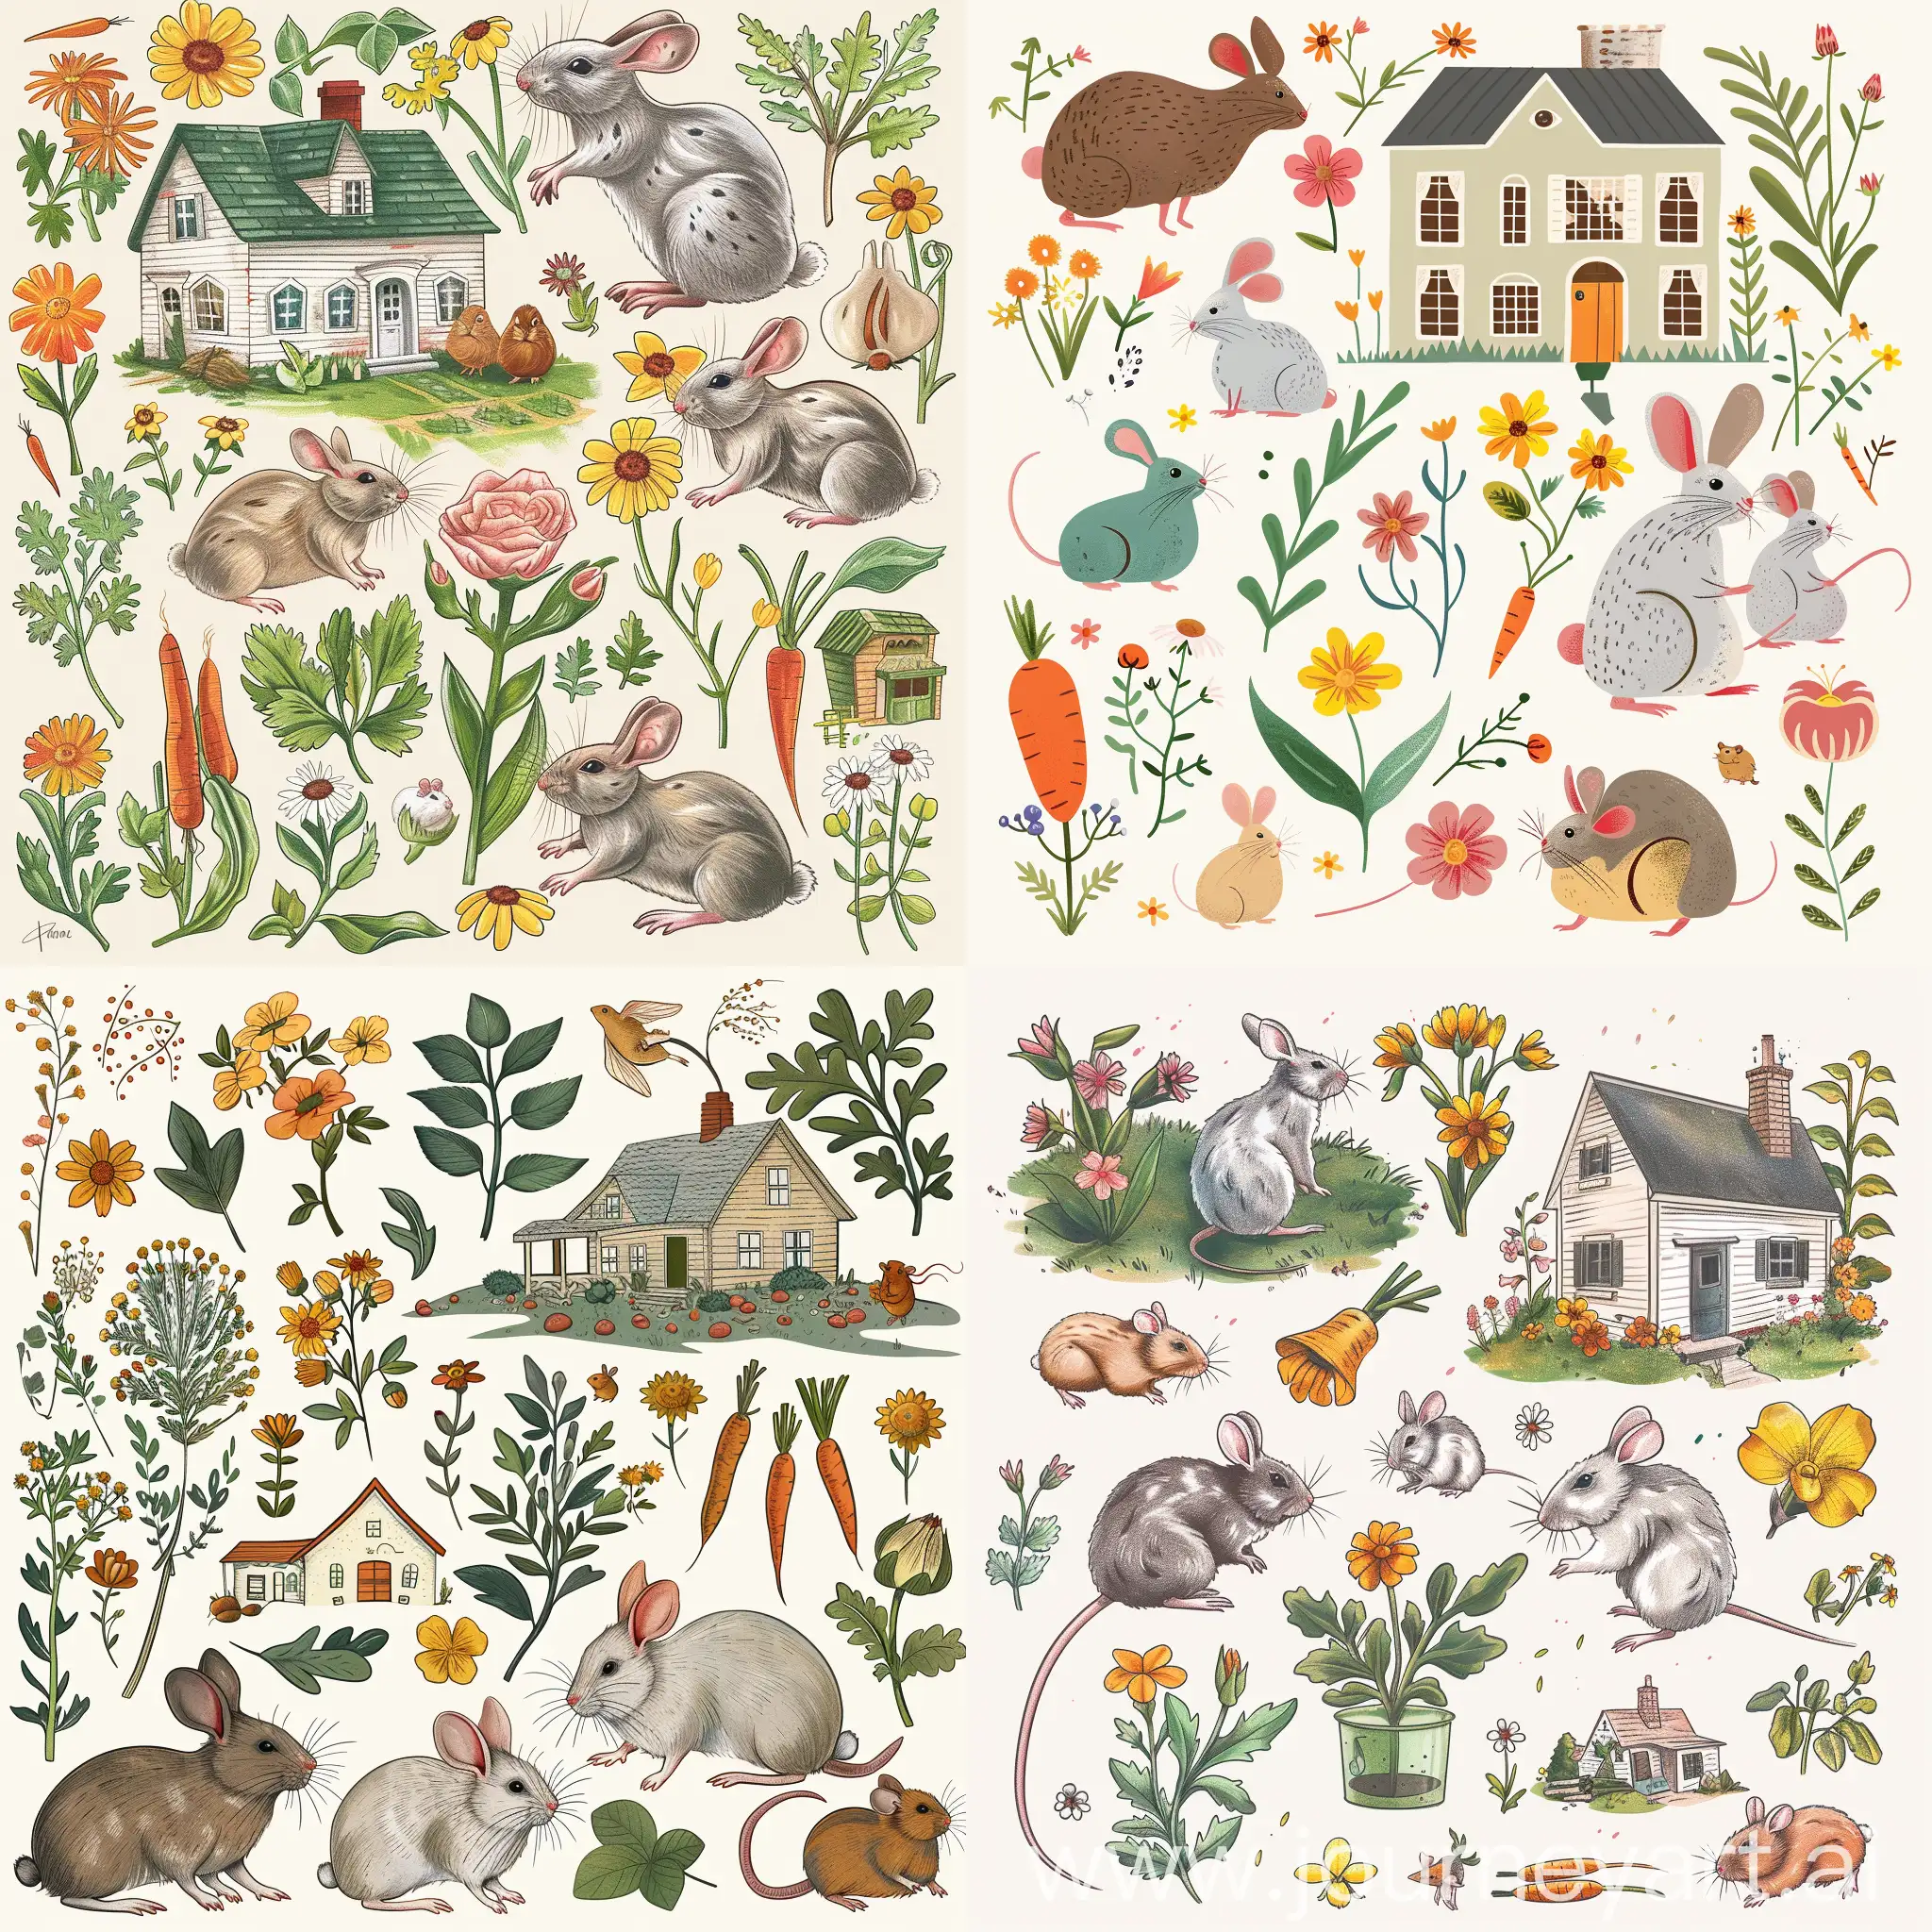 Нарисуй картинку , где есть лабораторные мыши, кролики, морские свинки, дача, цветы, морковка, и прочие урожаи. Используй приятные тона. Картинка не должна быть страшной 